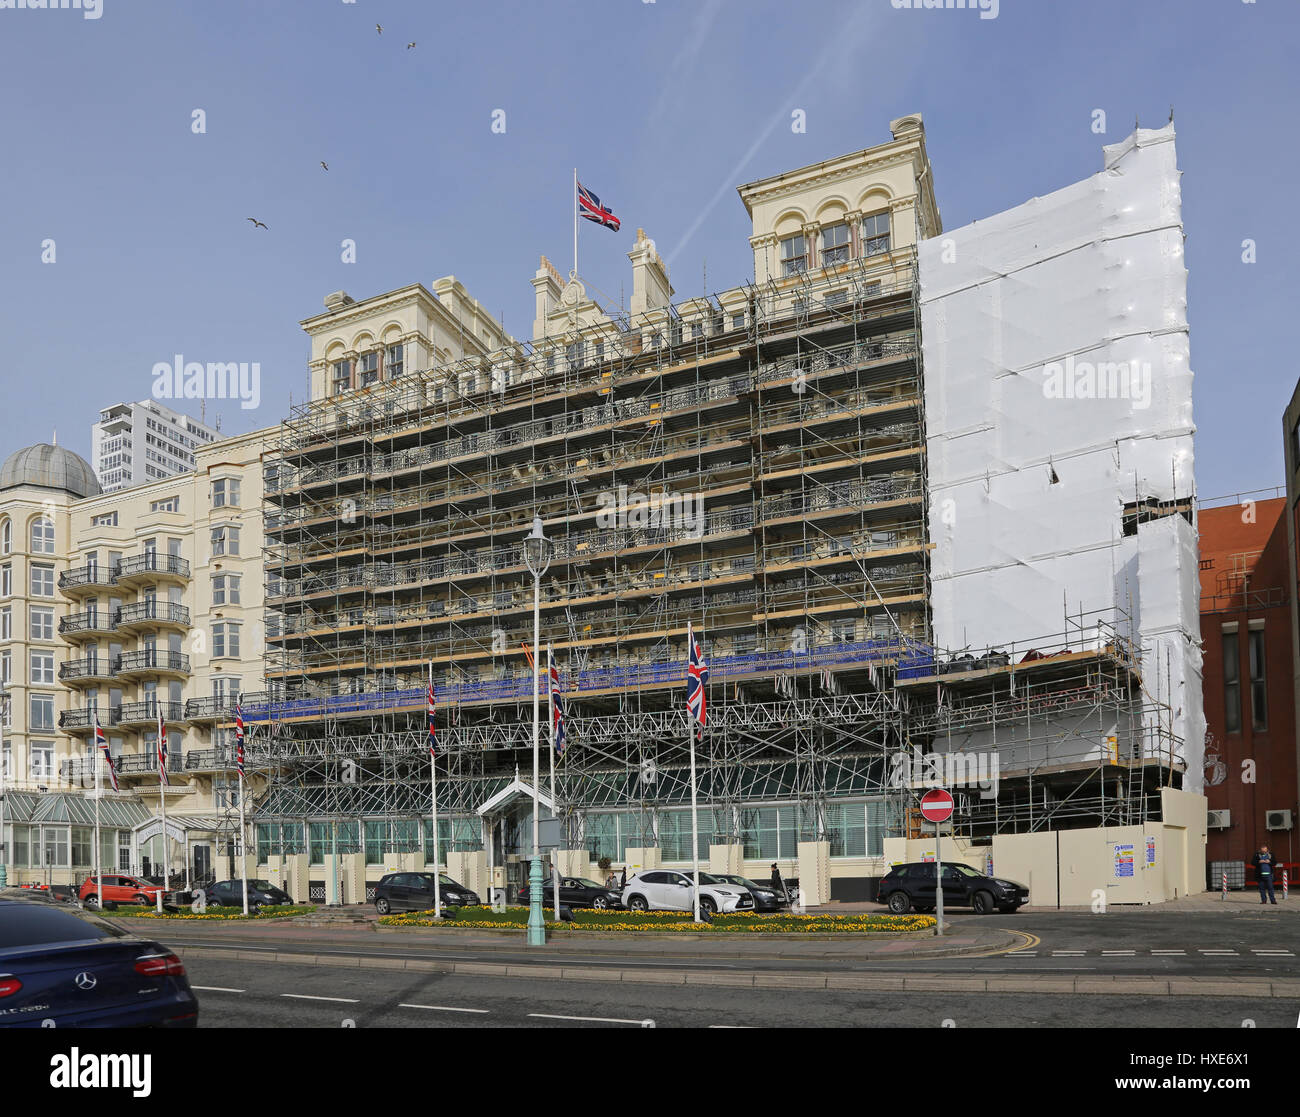 Grand Hotel Brighton, enveloppé dans un échafaudage au cours de travaux de rénovation, Mars 2017 Banque D'Images